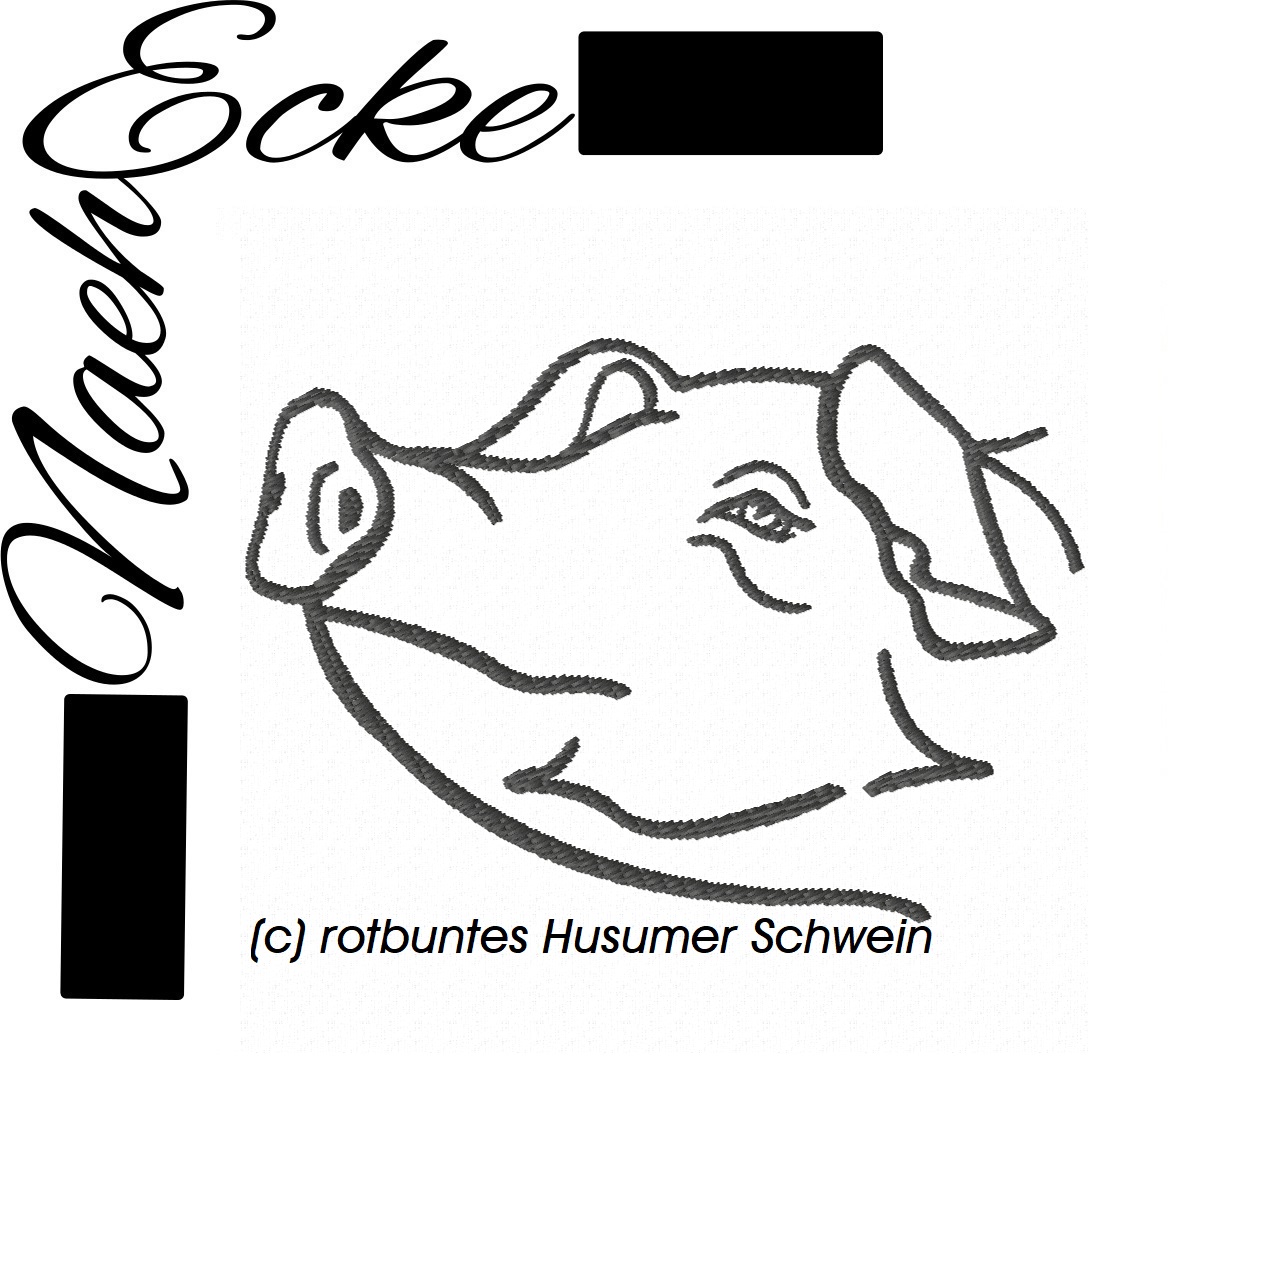 Schwein 3 / rotbuntes Husumer Schwein